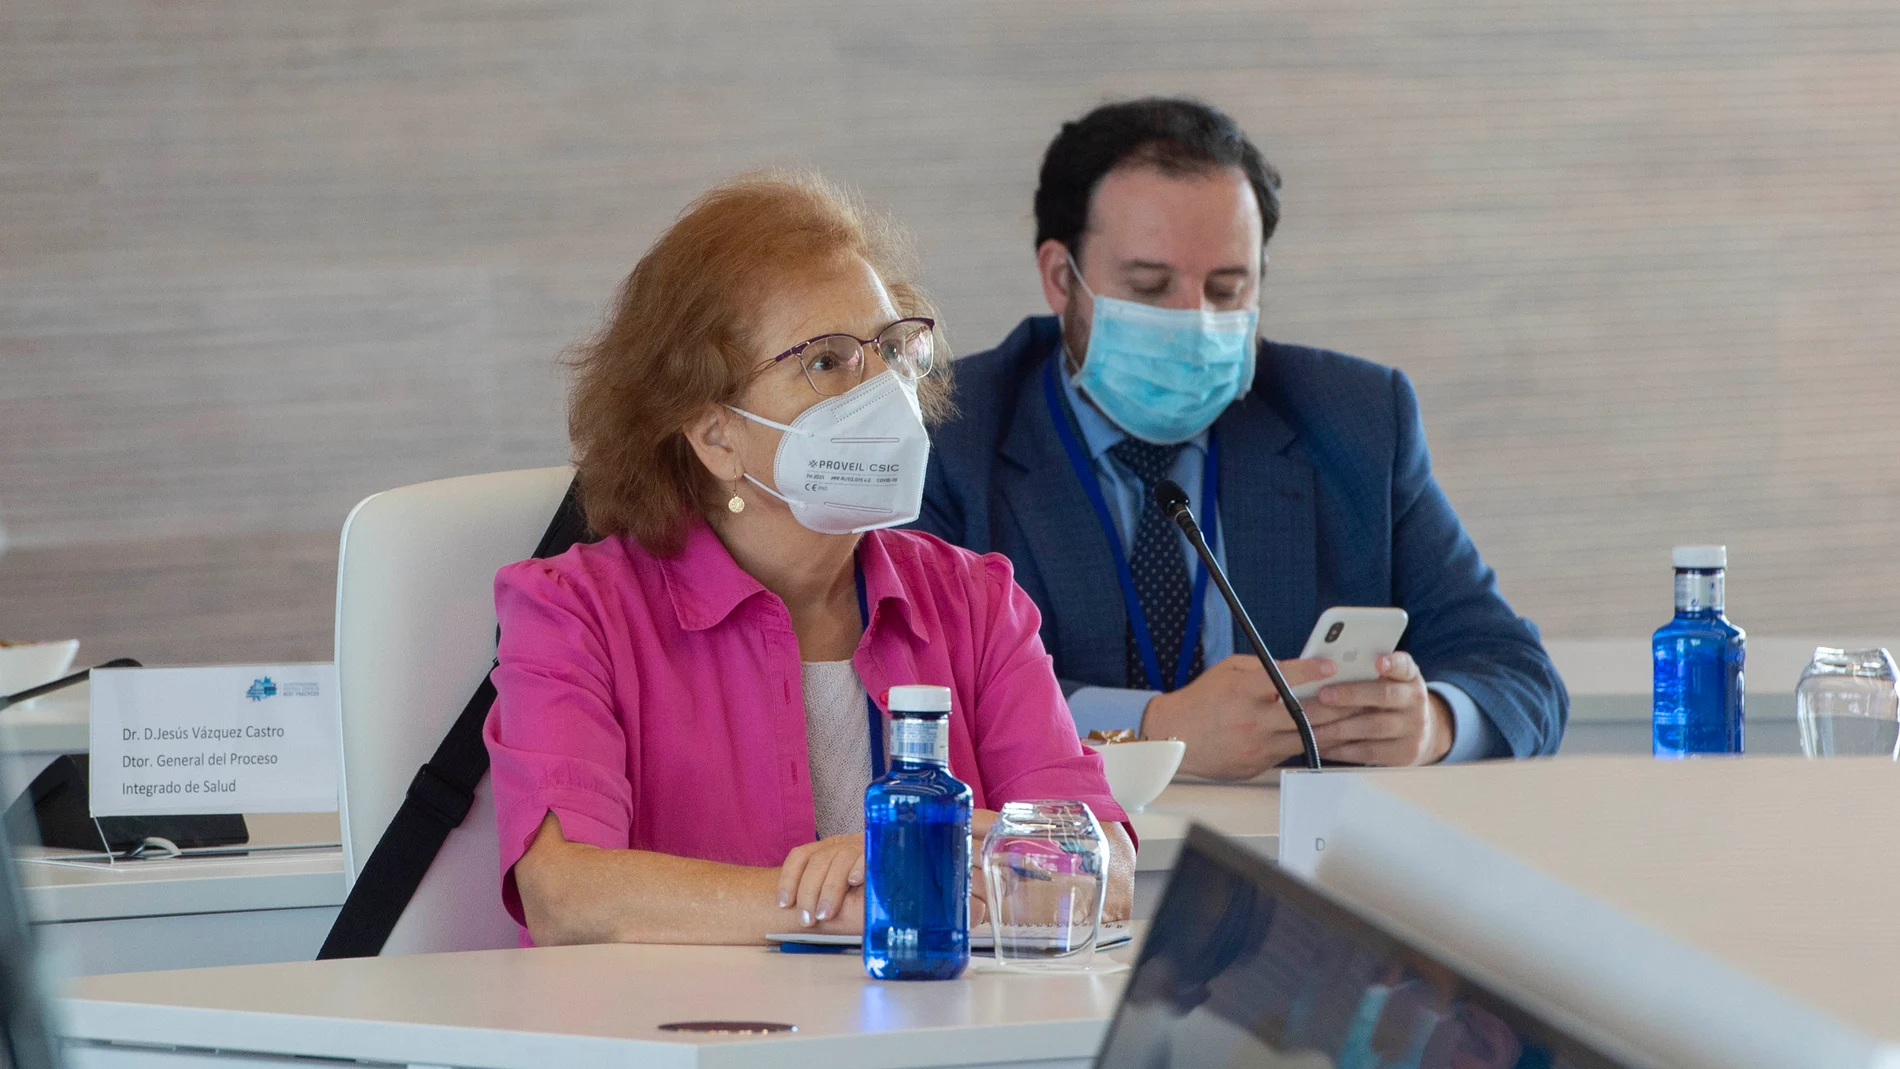 La viróloga Margarita del Val, en la inauguración del Primer Encuentro Internacional sobre Covid-19, a 23 de junio de 2021, en el Hospital Isabel Zendal, Madrid